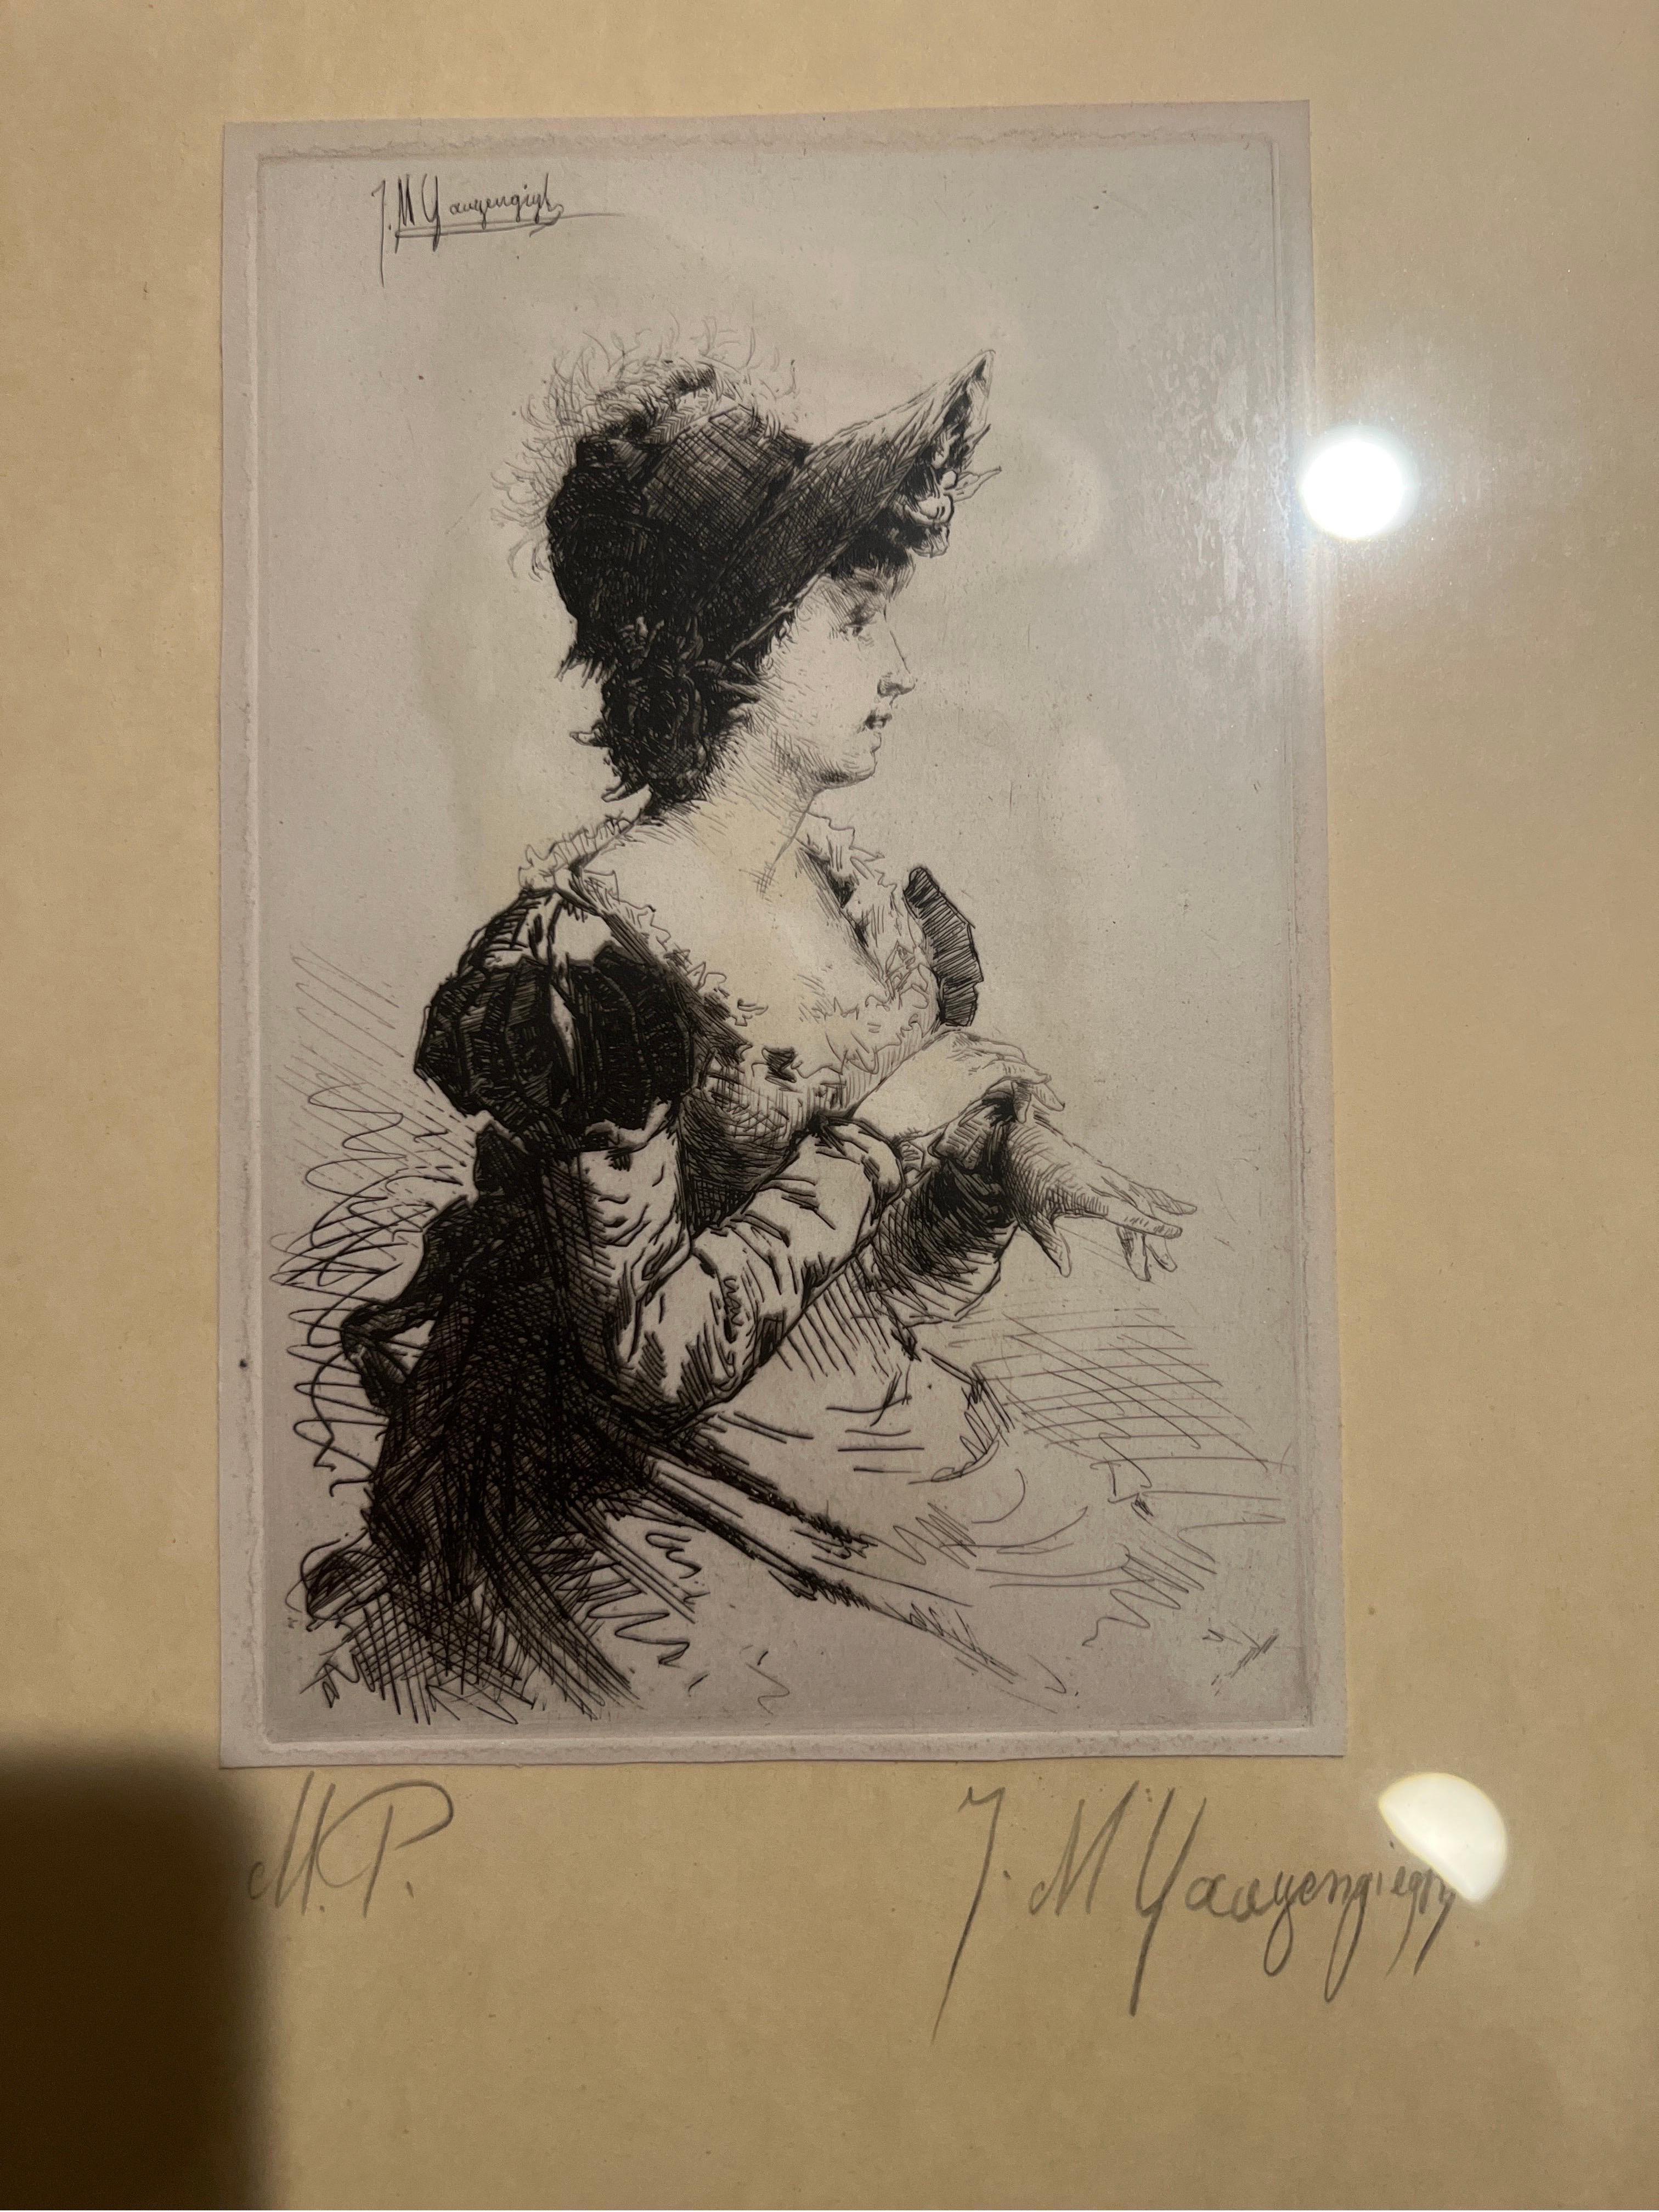 Ignaz Marcel Gaugengigl (allemand, 1855-1932) Profil d'une femme Gravure à la pointe sèche.

Gravure à la pointe sèche d'époque de l'artiste allemand - Profil d'une femme ou Femme au bonnet. Il existe de nombreux exemples de cette image, mais très